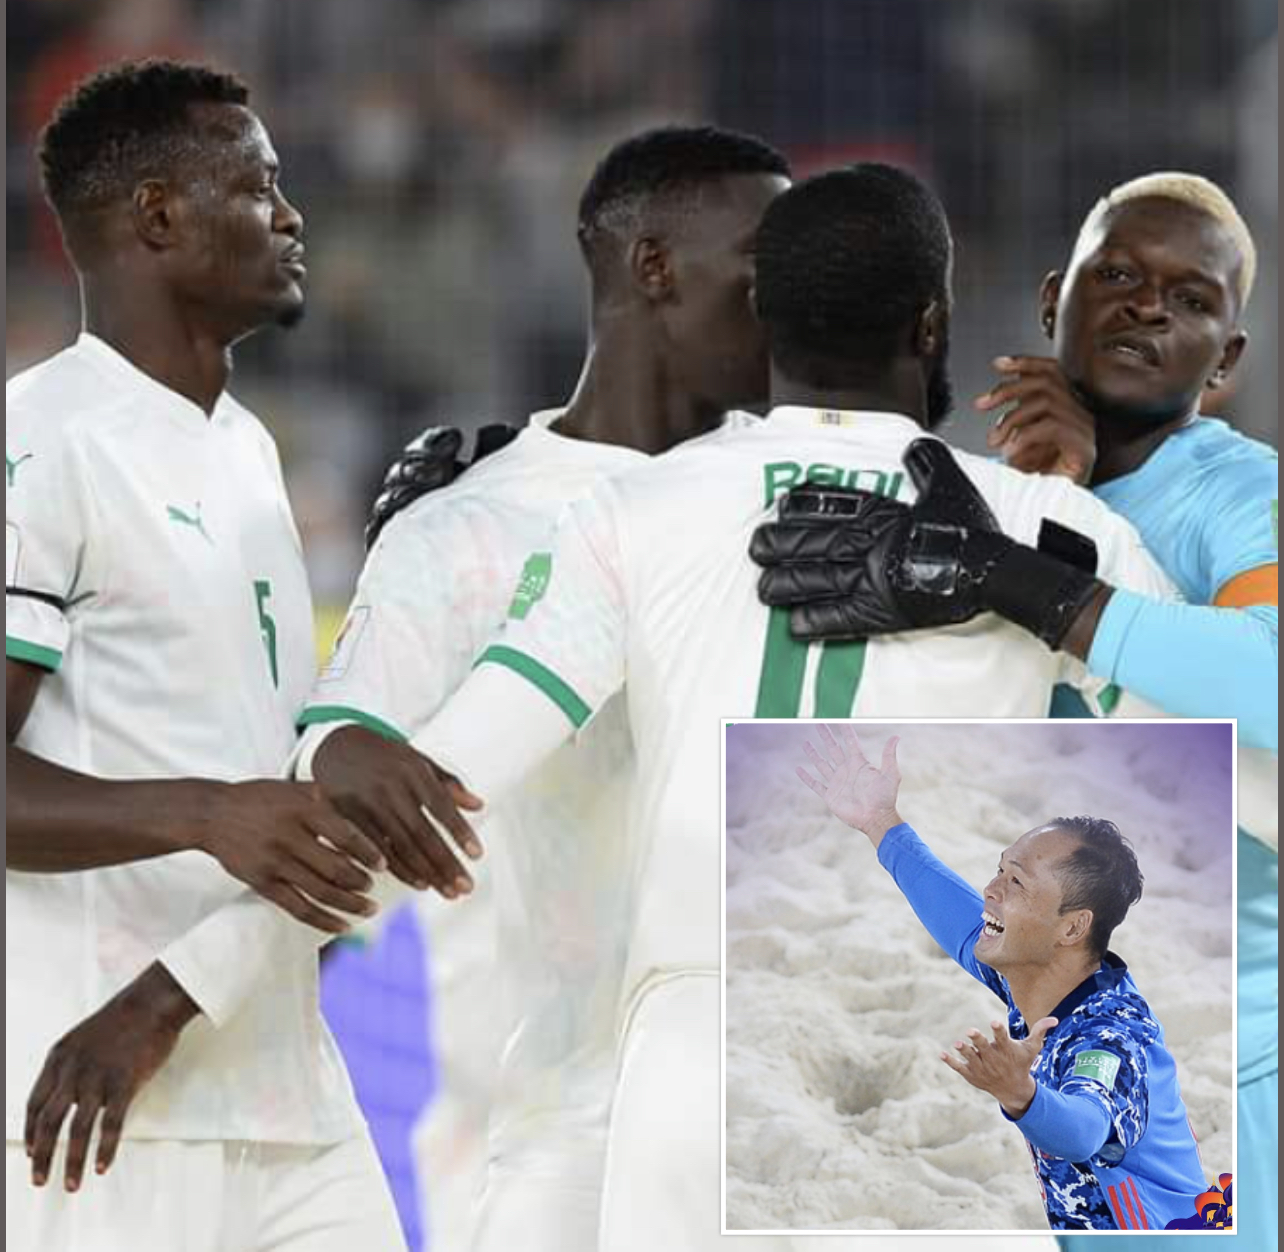 Coupe du monde Beach Soccer : Sénégal - Japon en demi-finale, ce samedi (16h30 GMT)